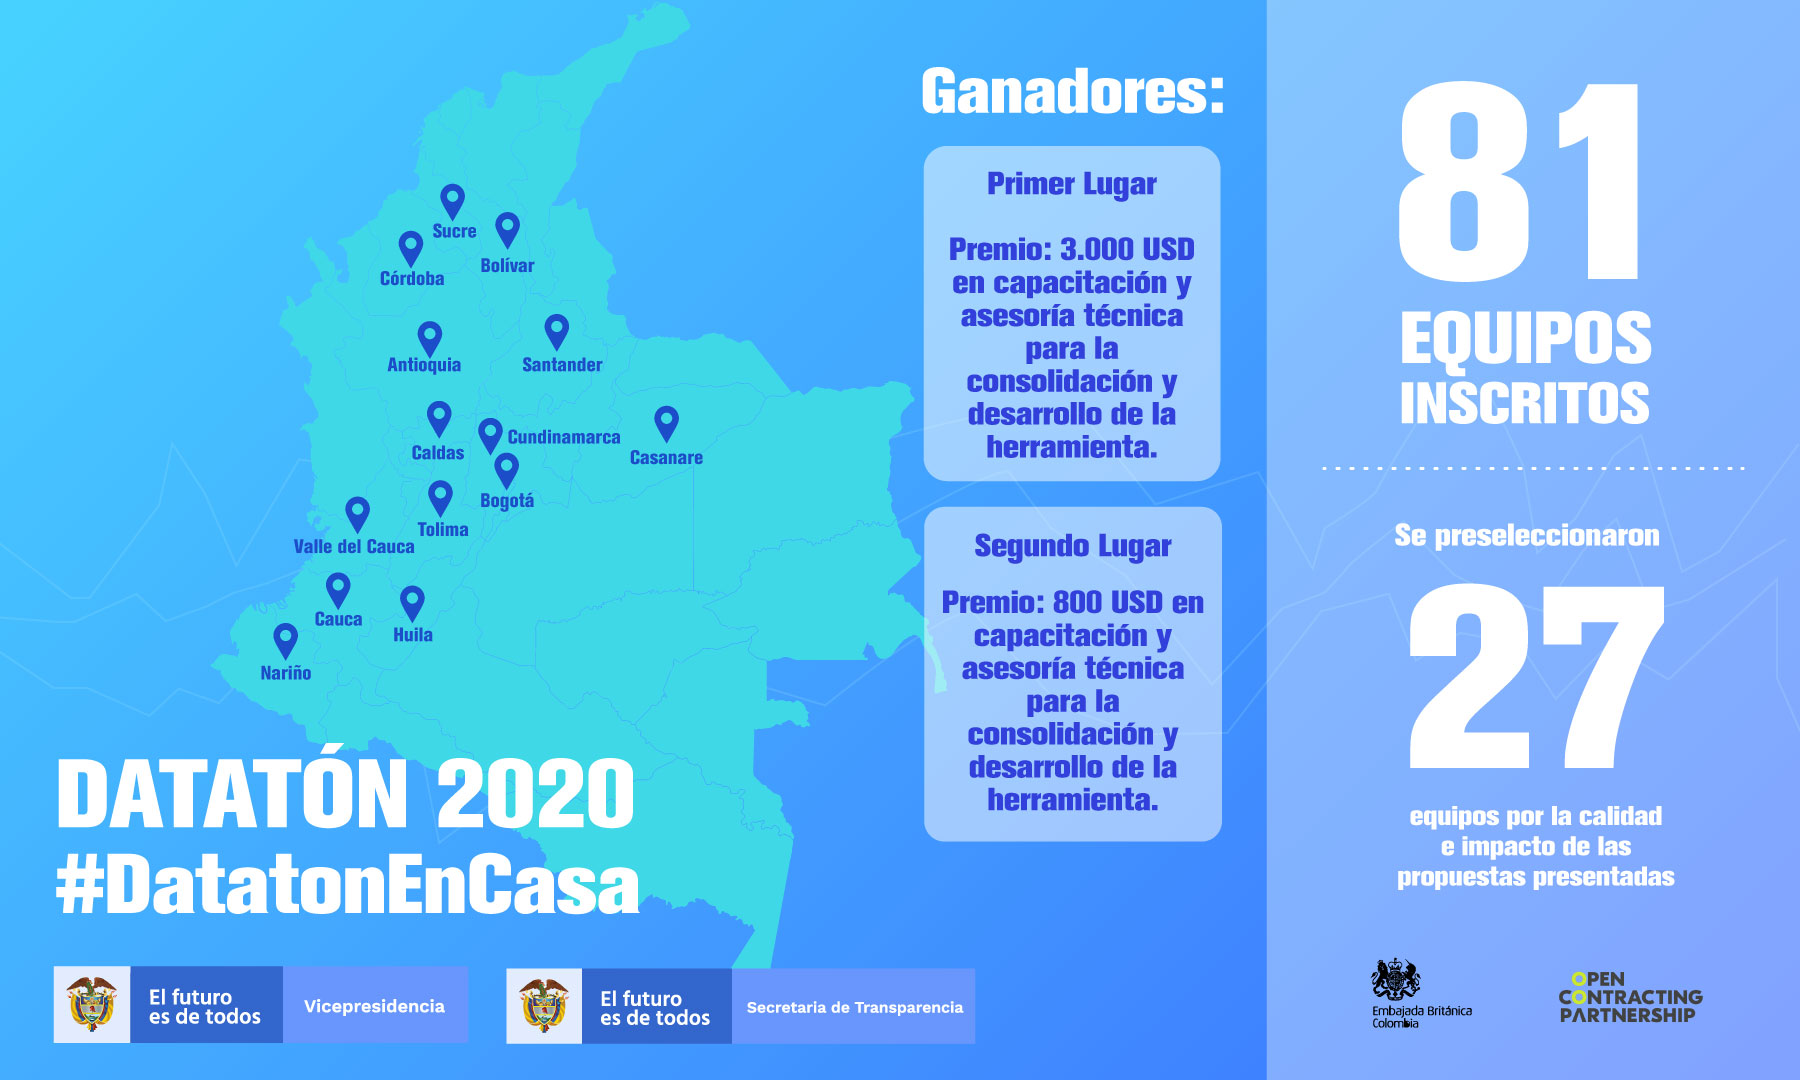 Gráfico del Datatón 2020, mapa de Colombia con departamentos que participaron, 81 equipos inscritos, 27 preseleccionados